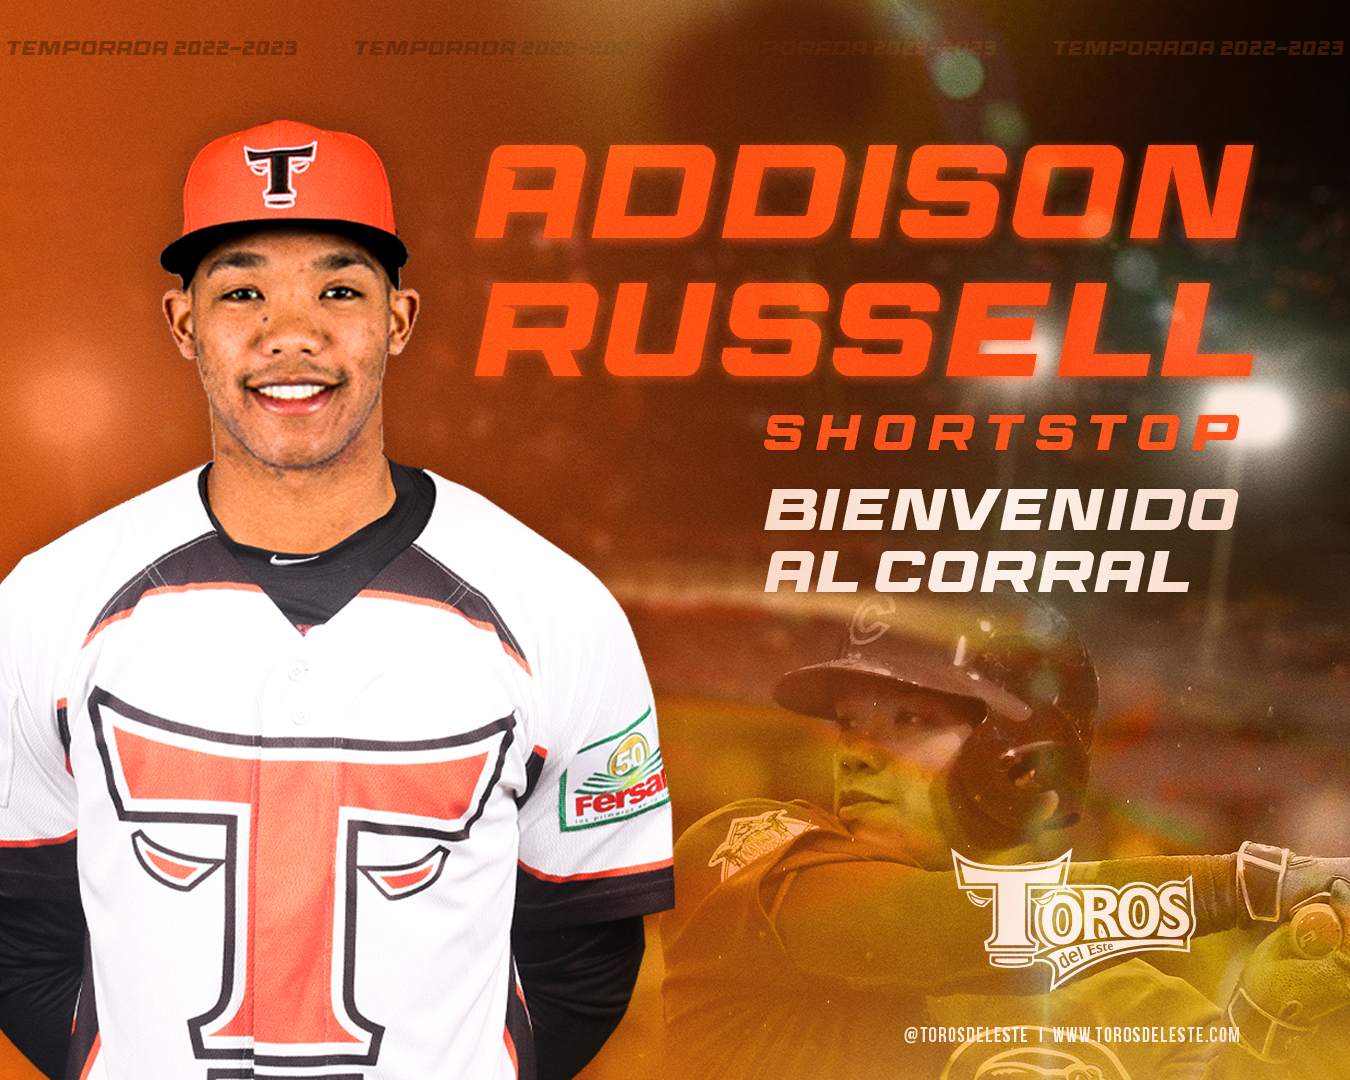 Toros anuncian contratación del infielder Addison Russell